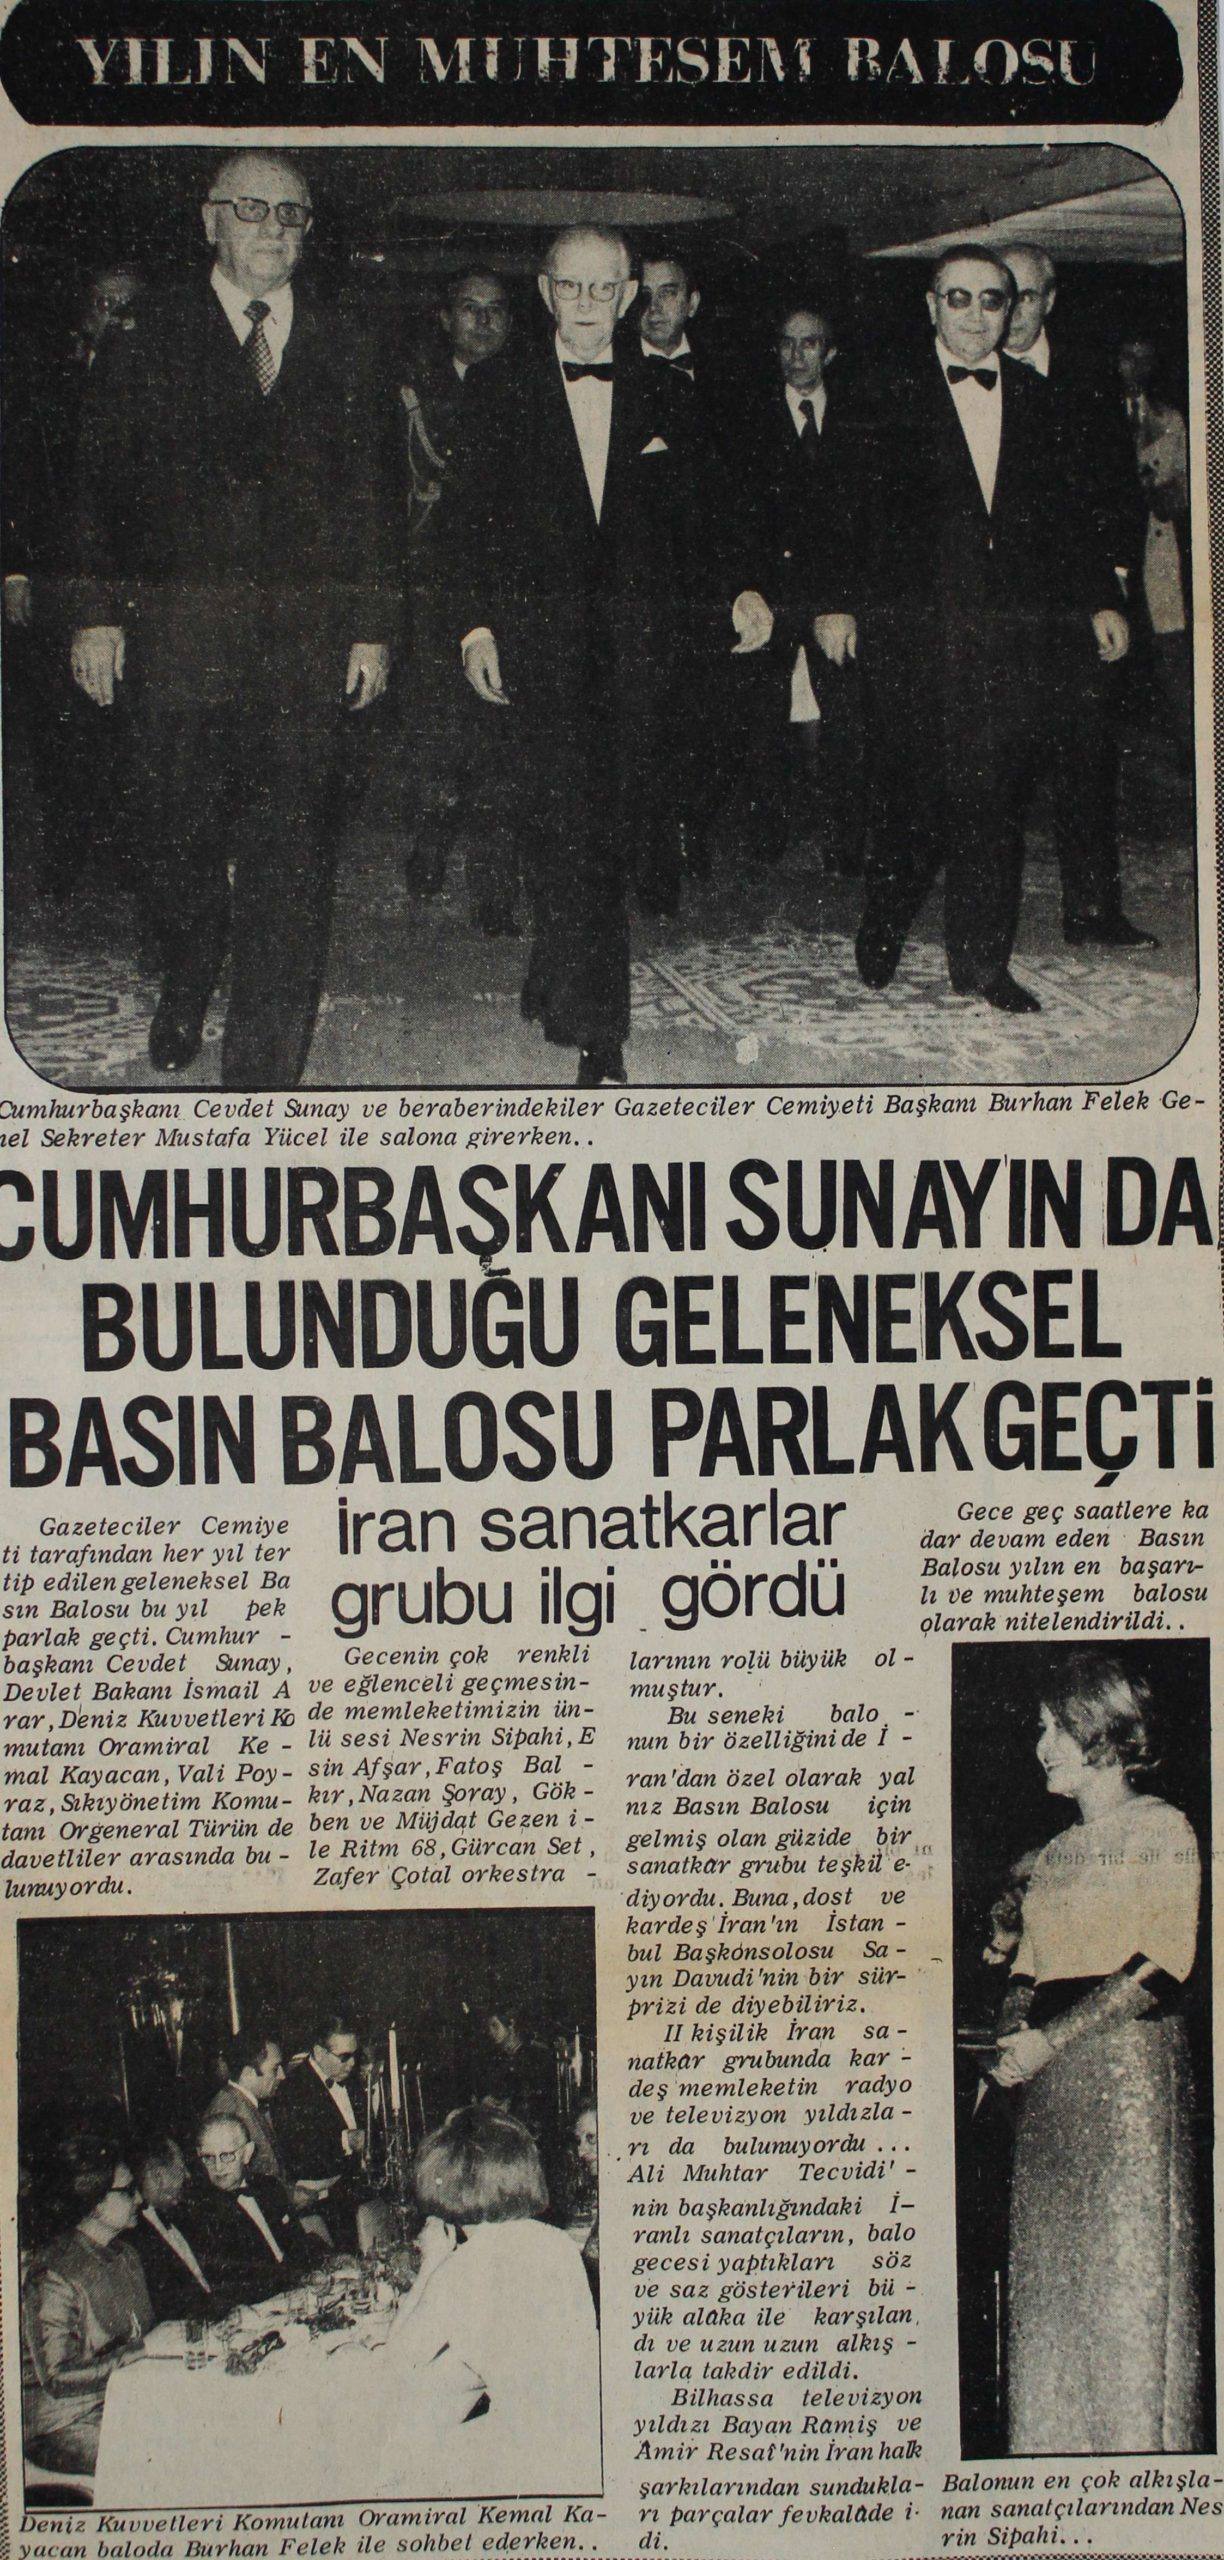 Basın Balosu-Cevdet Sunay (09.03.1973)